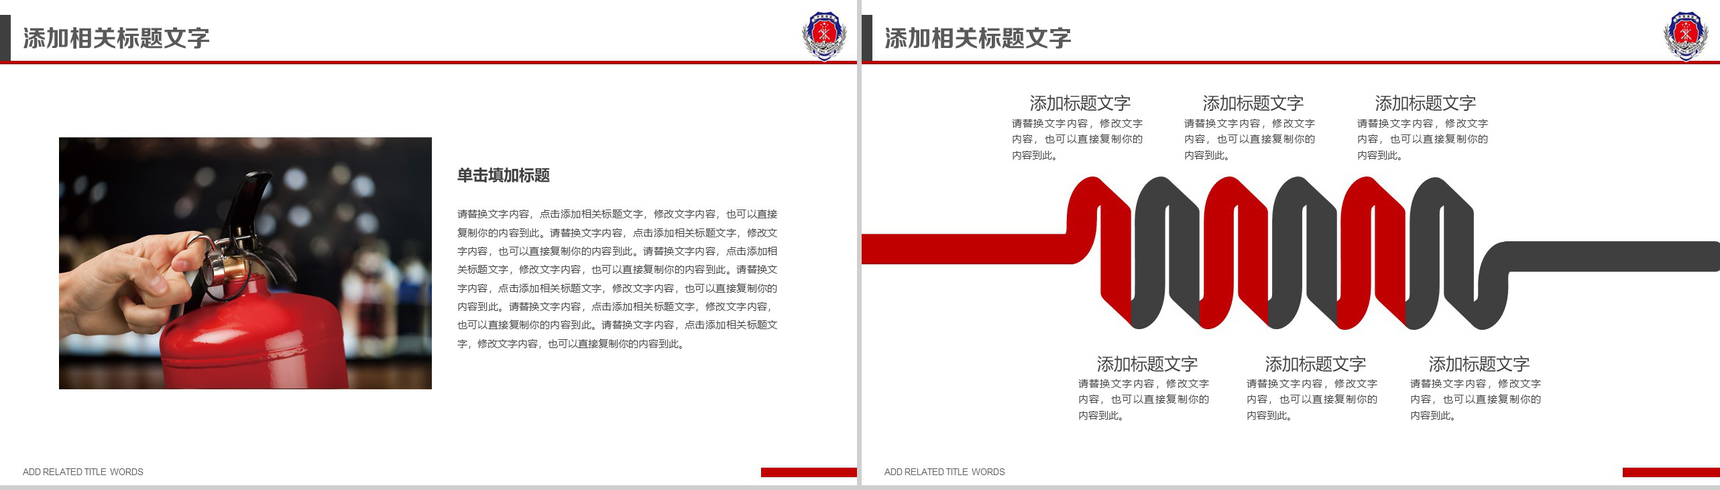 中国消防 防火安全PPT模板-9